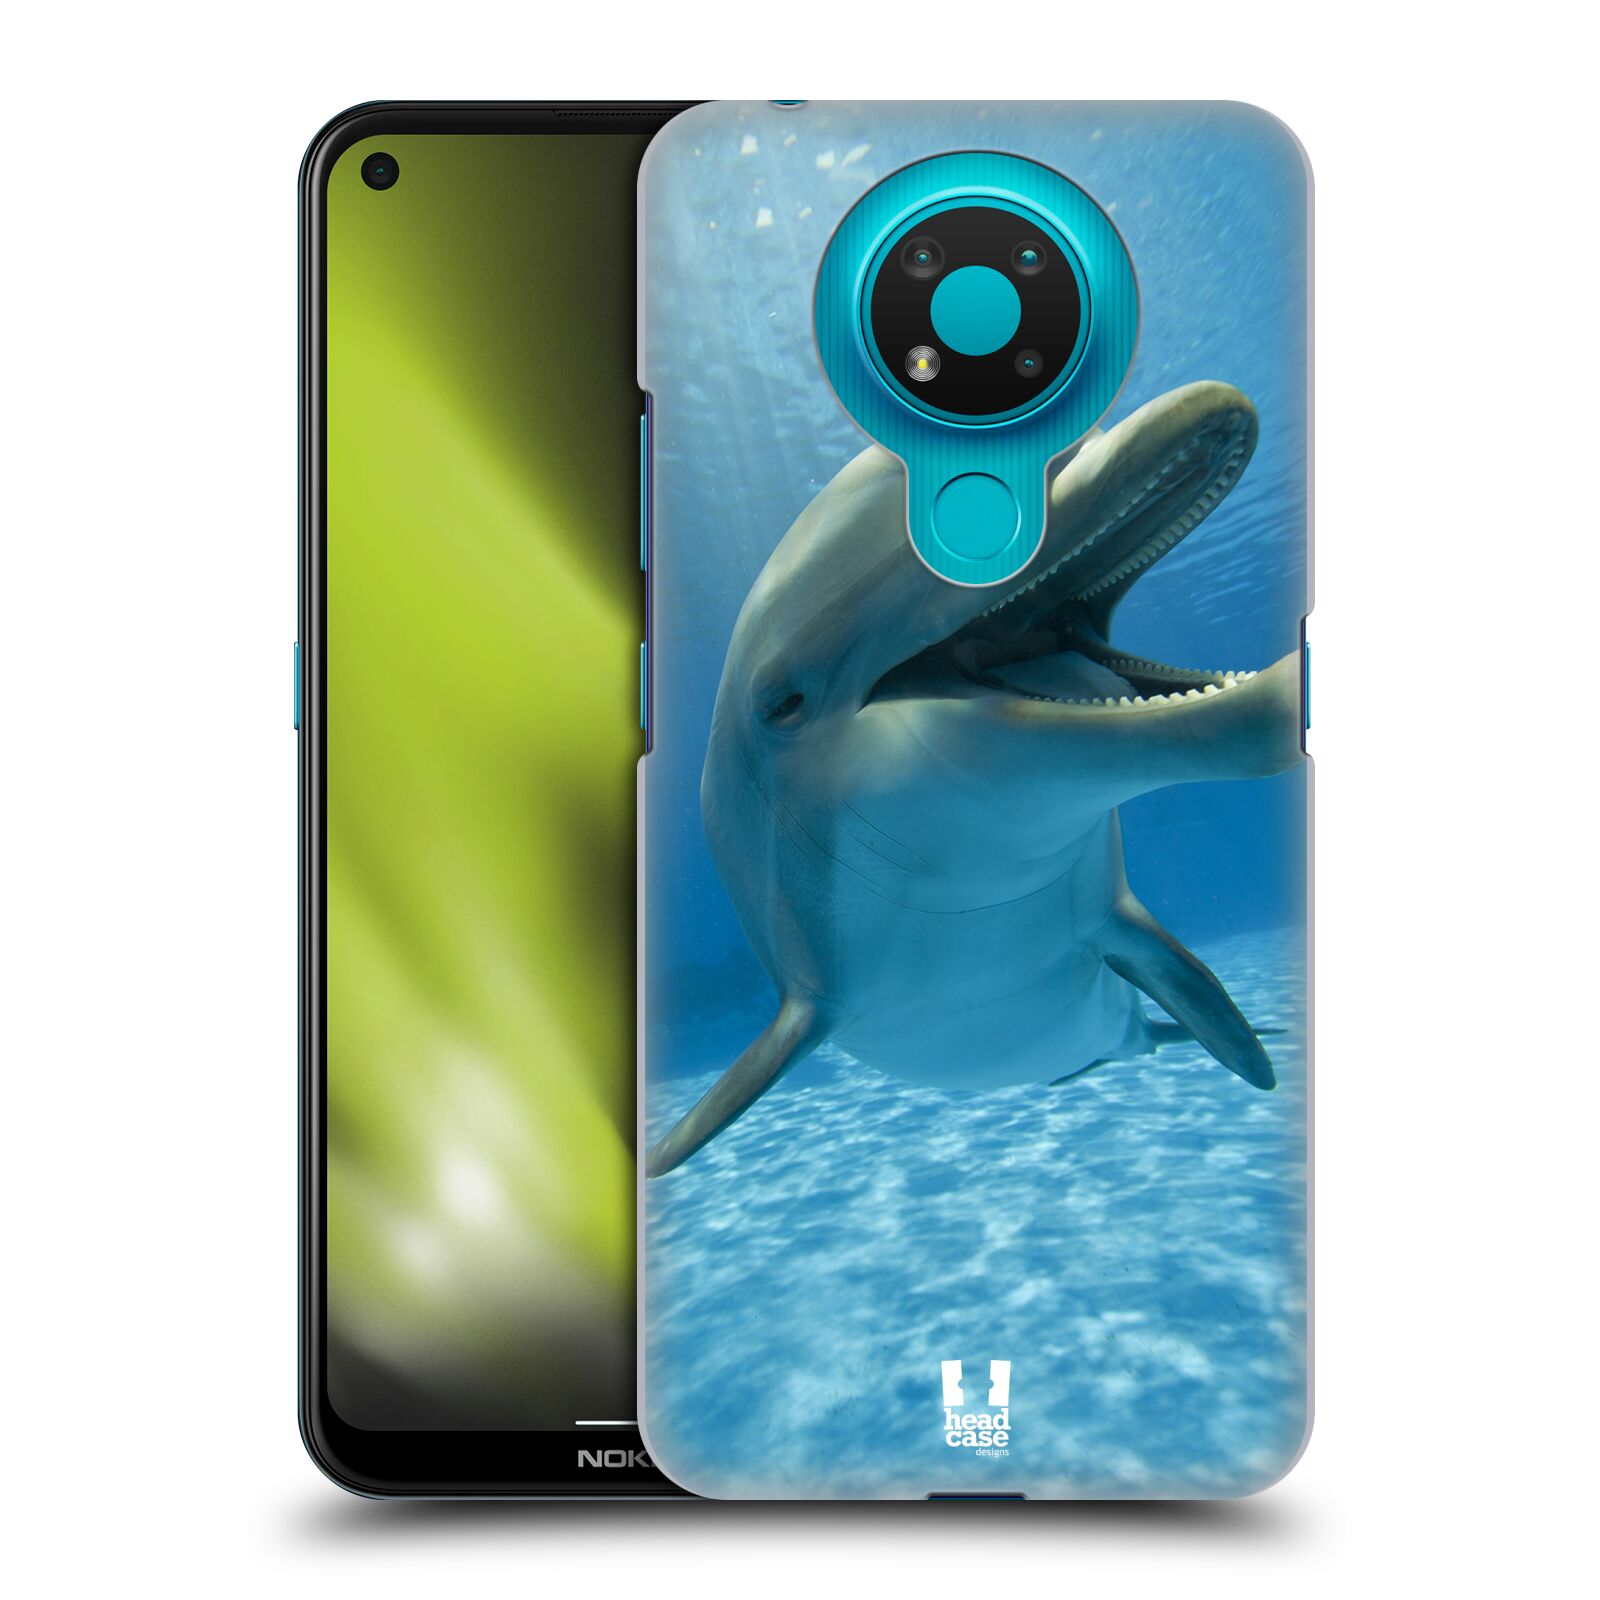 Zadní obal pro mobil Nokia 3.4 - HEAD CASE - Svět zvířat delfín v moři